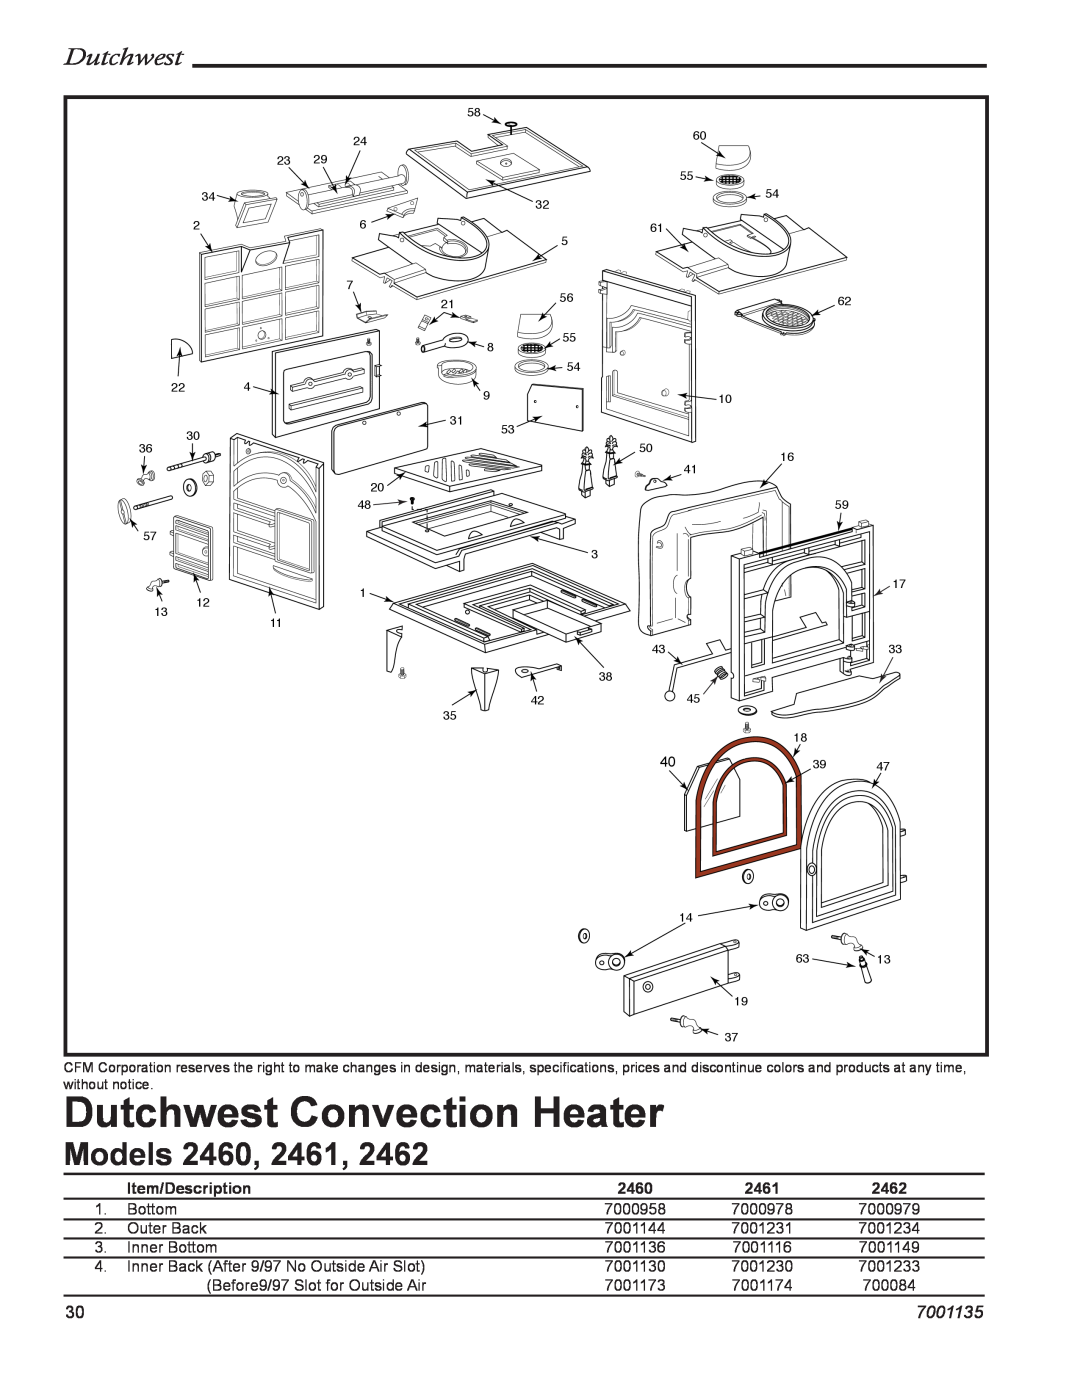 Vermont Casting 2461, 2462, 2460 manual Dutchwest Convection Heater, Models, 7001135, Item/Description 